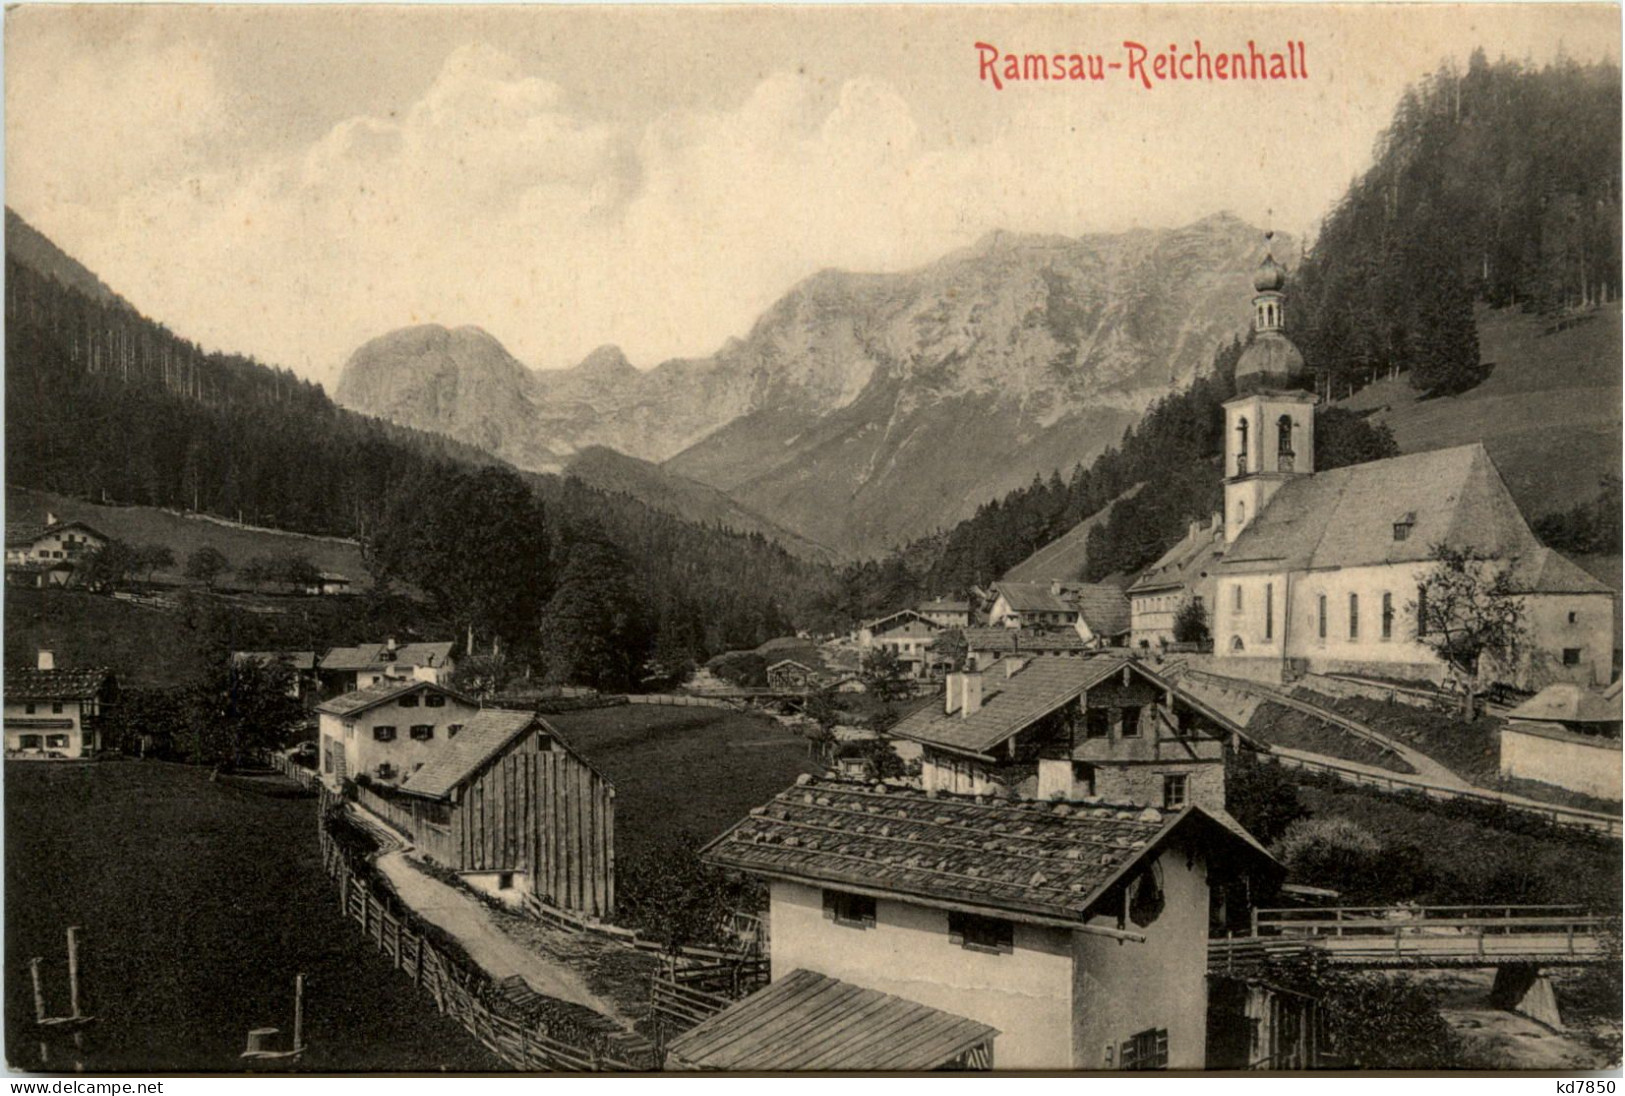 Ramsau-Reichenhall - Berchtesgaden